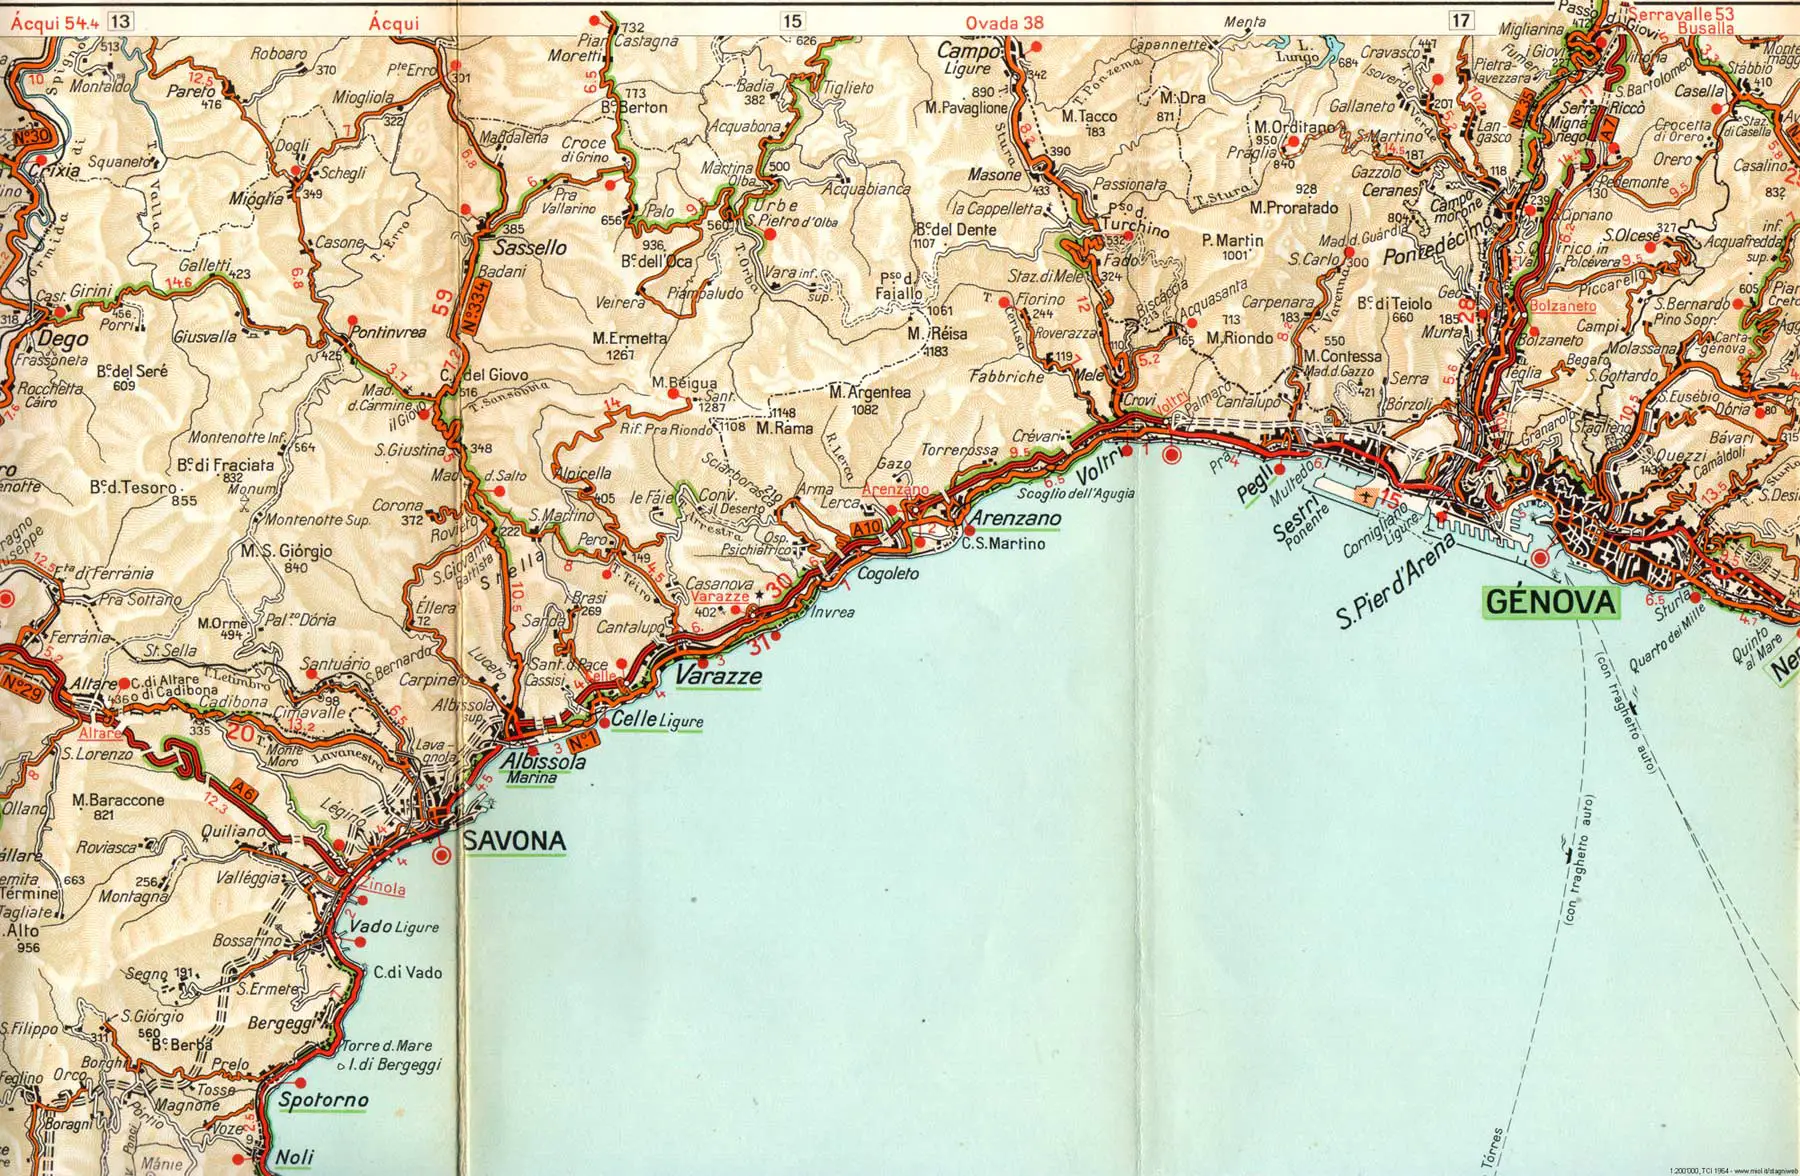 Cartina Geografica Liguria